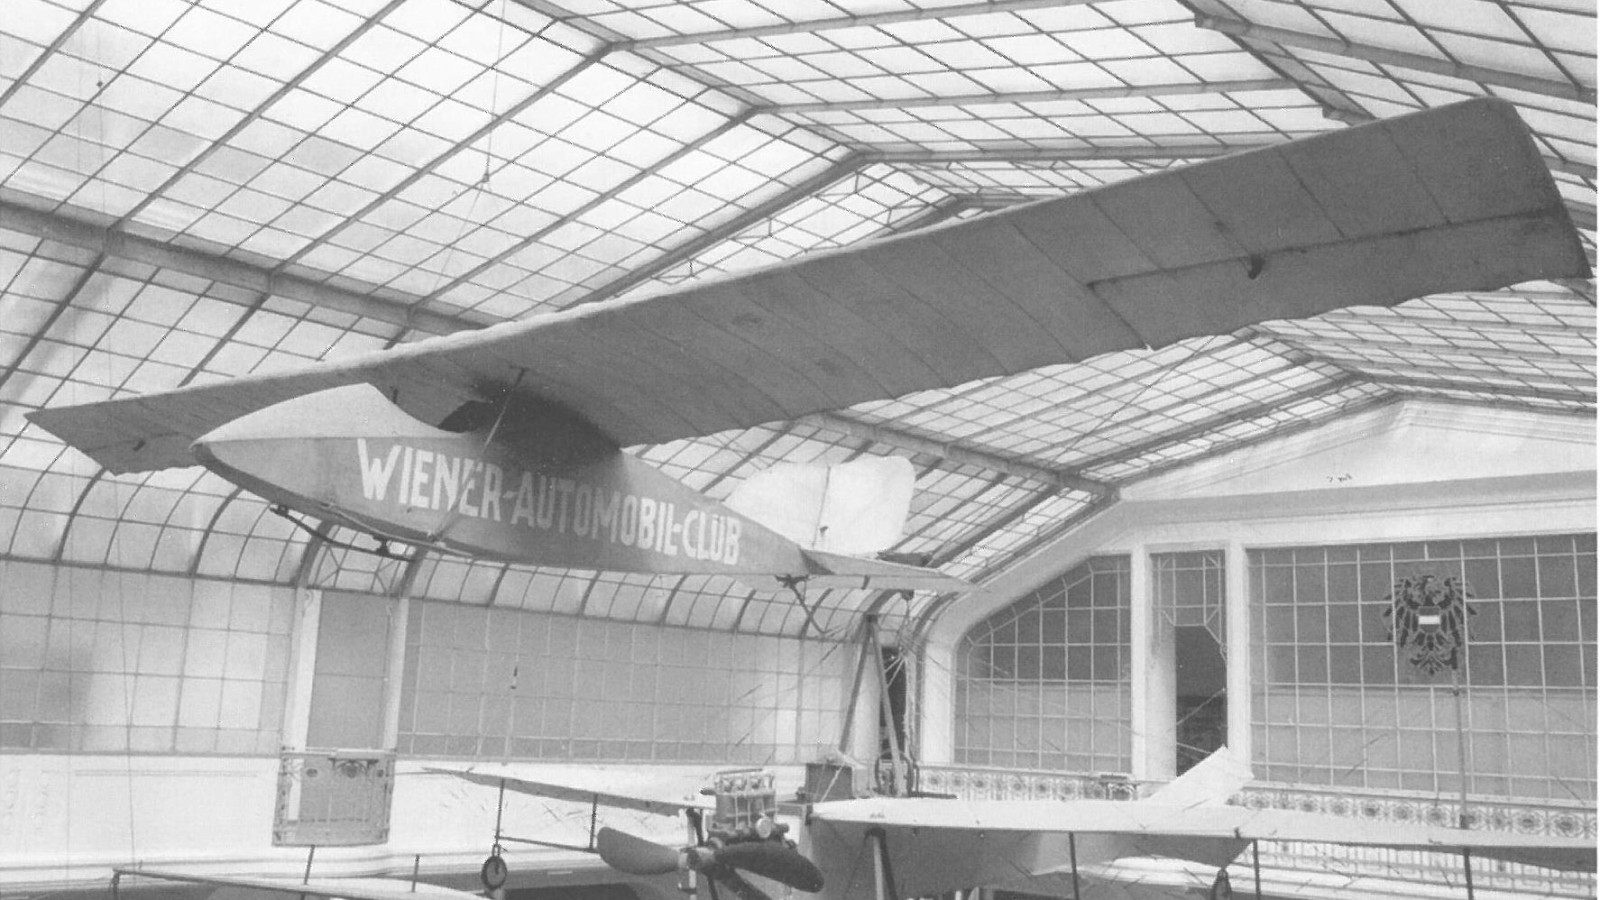 Segelflugzeug "Wien", Konstruktion Kermer, Inv. Nr. 2009/1: Einsitziger Schulterdecker, zwei Landkufen und Schleifsporn, offenes Cockpit